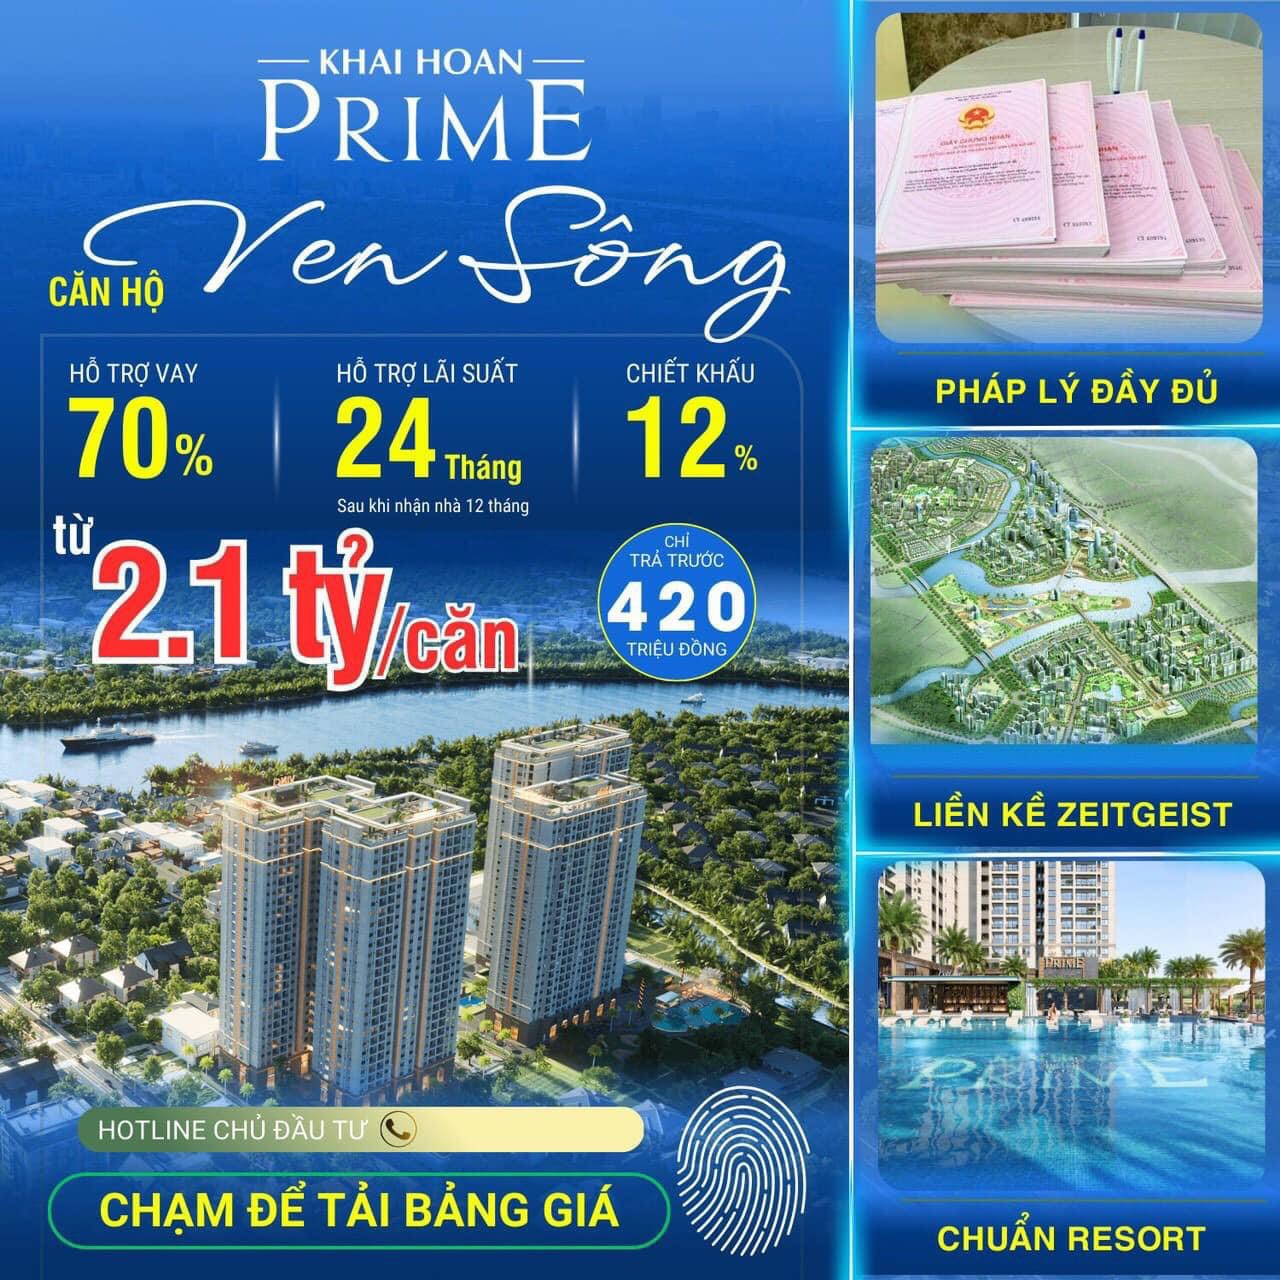 Dự án căn Hộ Khải Hoàn Prime liền kề khu đô thị Phú Mỹ Hưng Quận 7 giá 2.1 tỷ - Ảnh 1